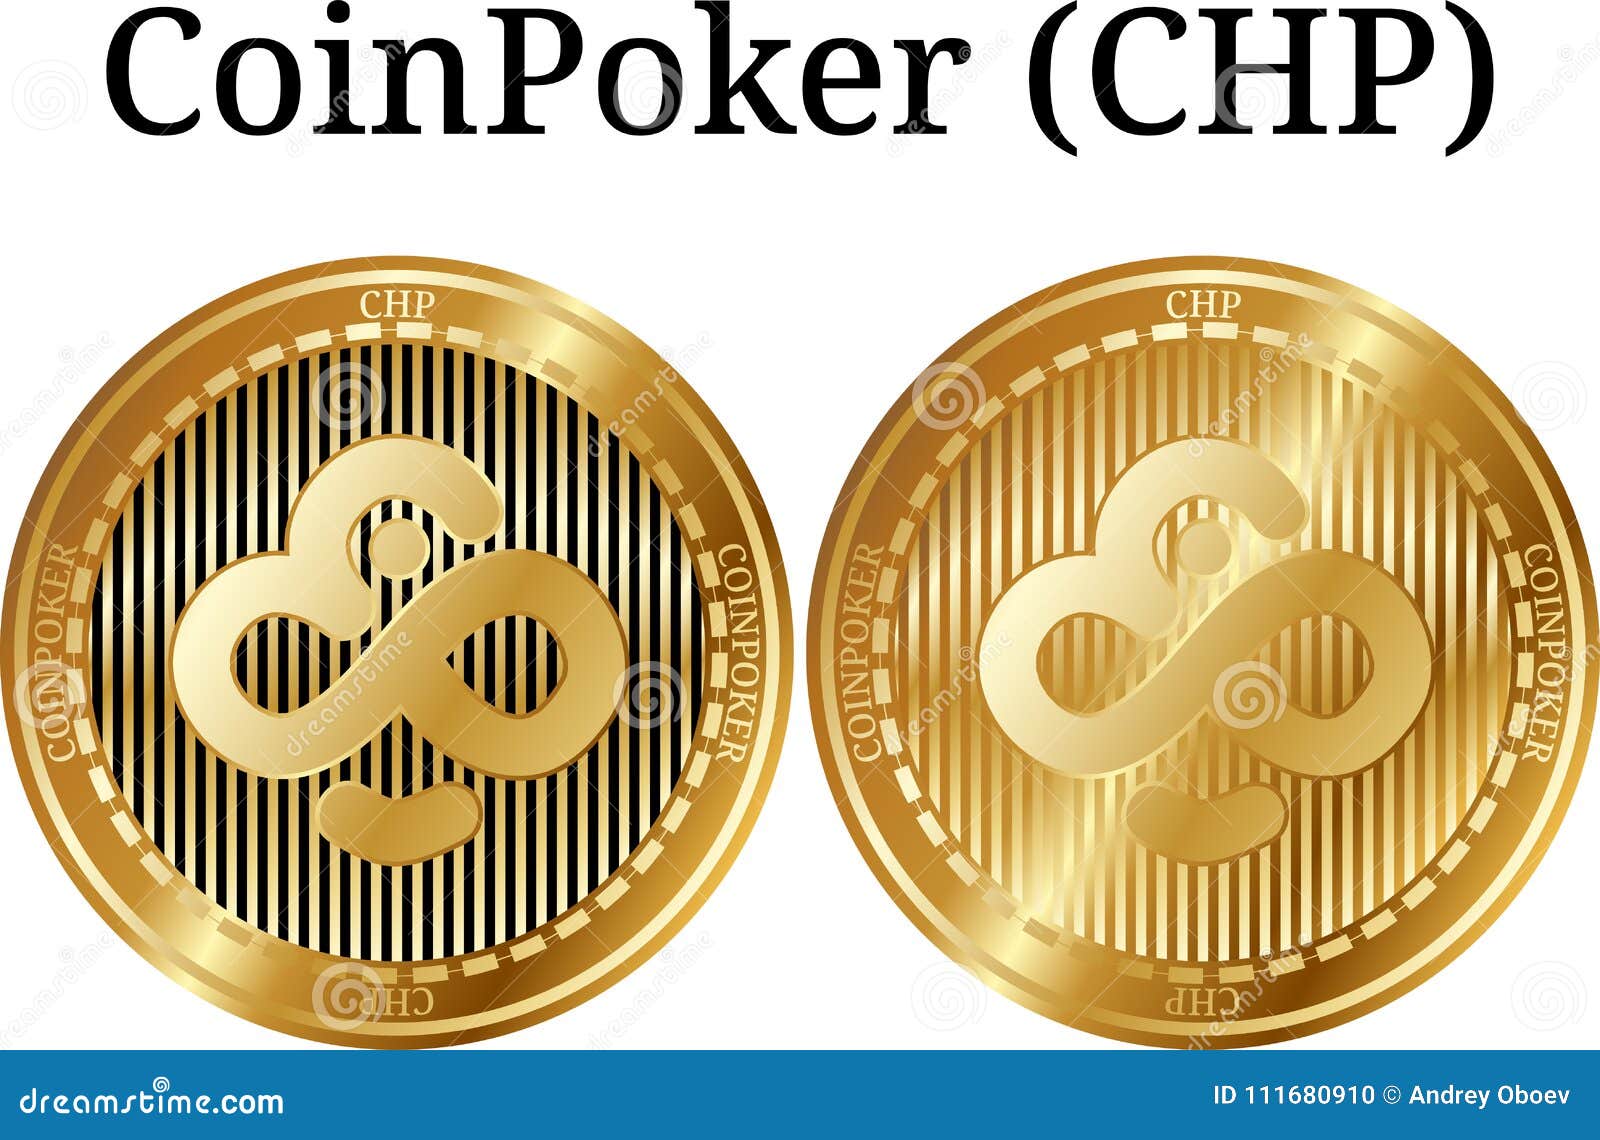 chp crypto coin